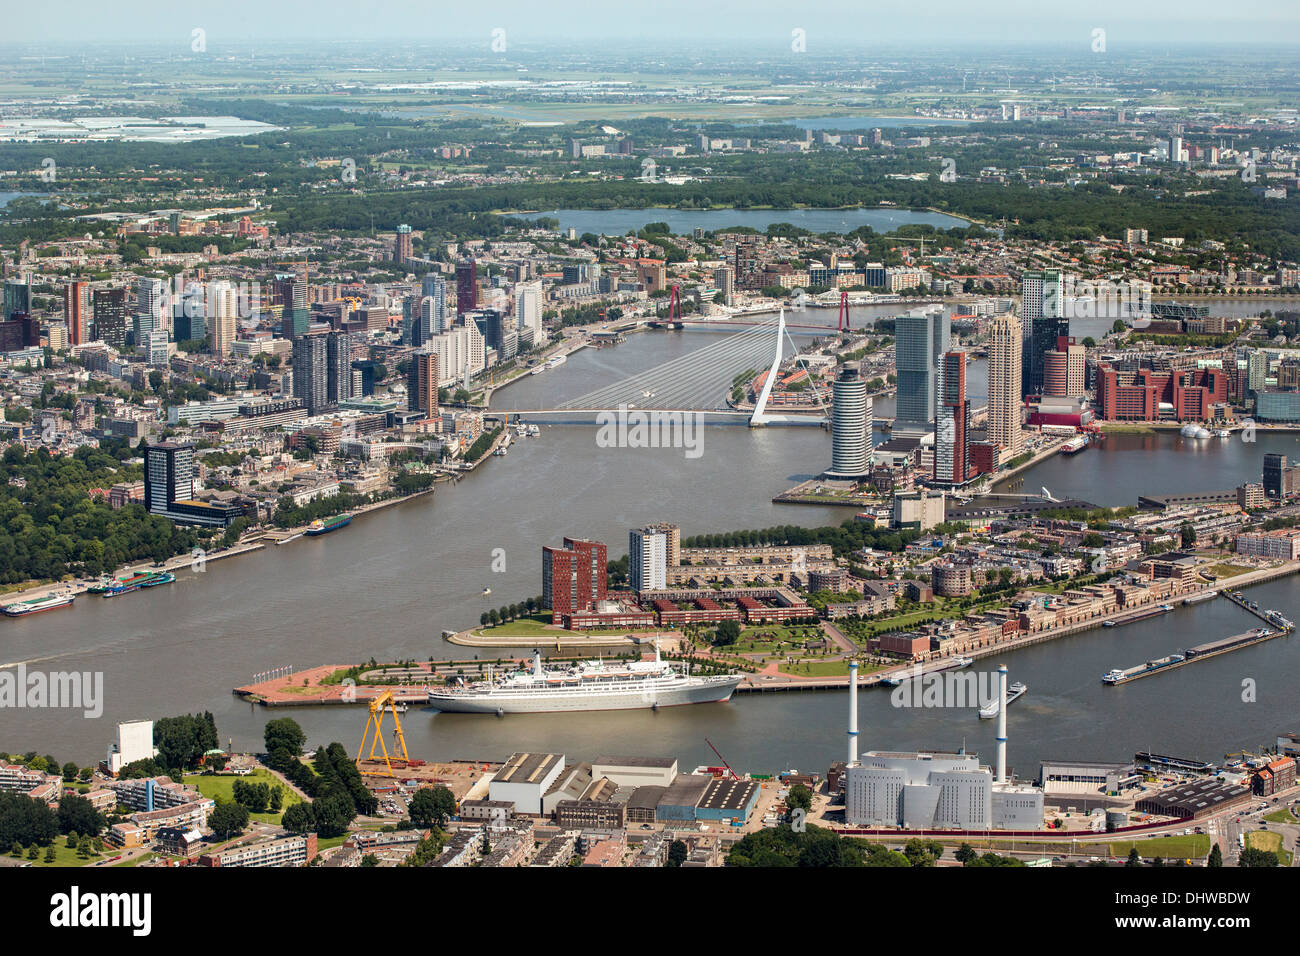 Niederlande, Rotterdam, Blick auf die Innenstadt. Vordergrund historische Schiff namens MS Rotterdam. Luftbild Stockfoto